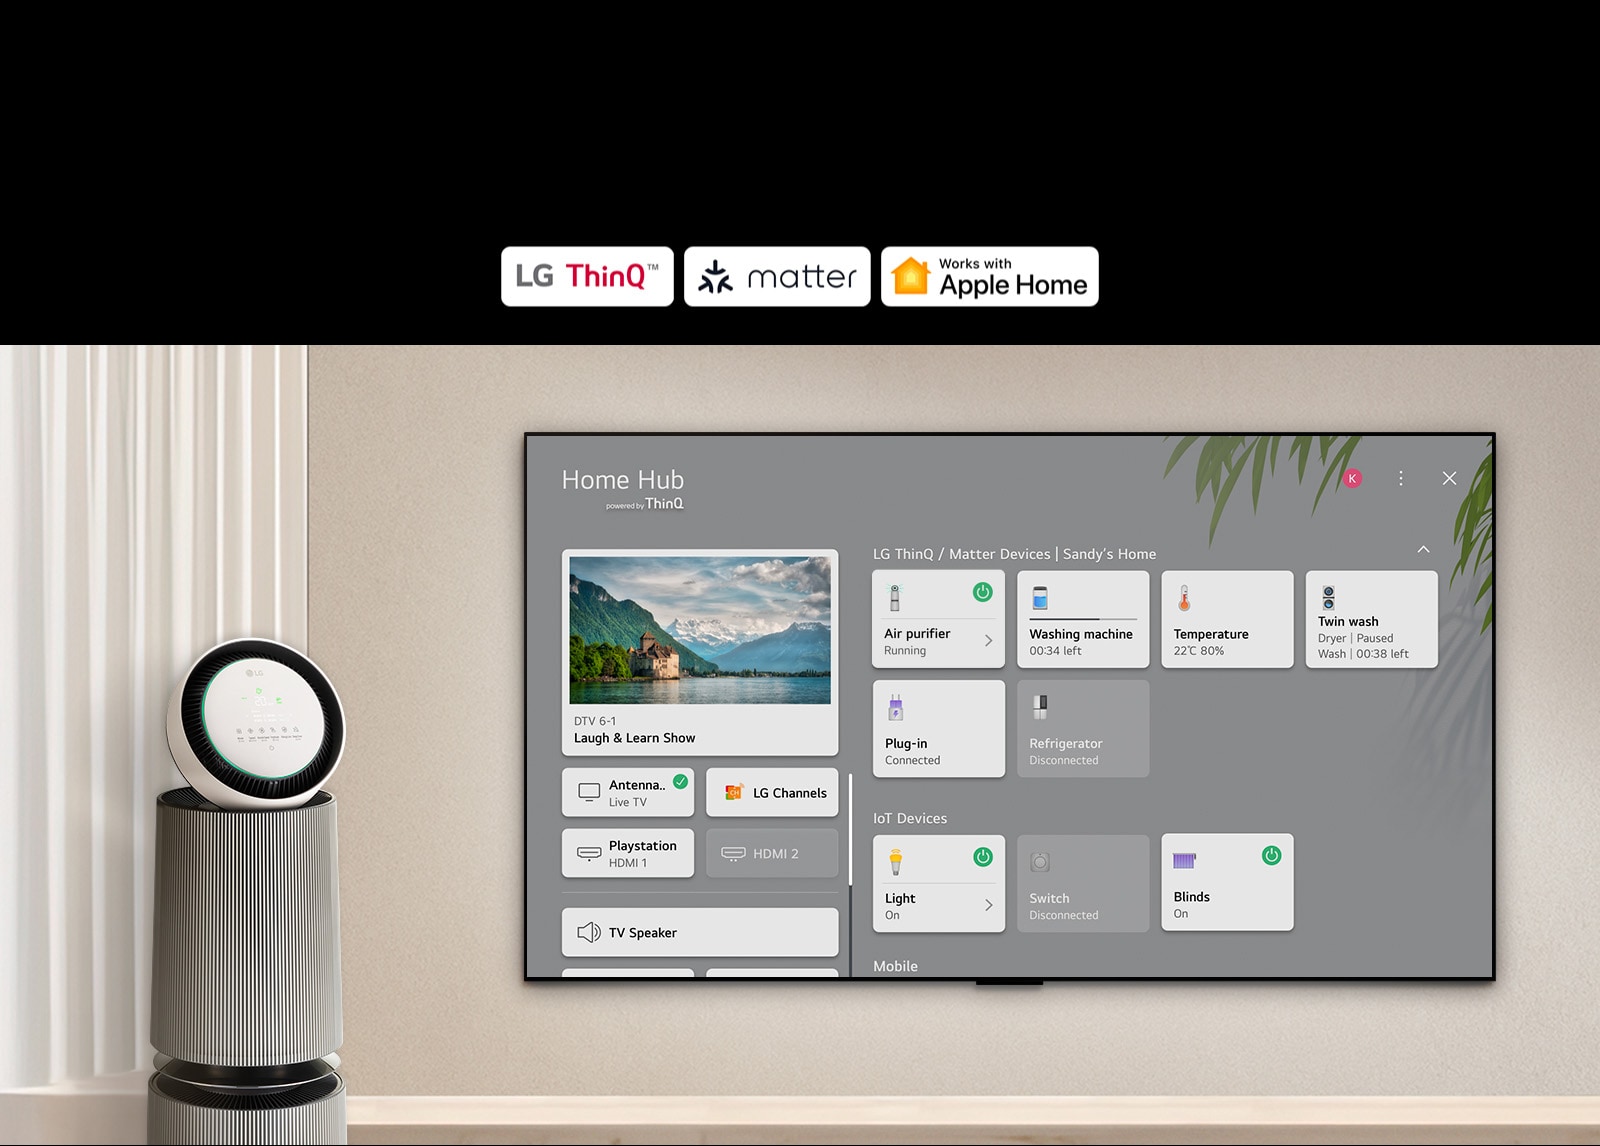 โลโก้ของ LG ThinQ™, วัตถุ และ Apple Home ทีวี LG ติดผนังและ LG PuriCare™ Objet Collection 360° ทางด้านซ้าย ทีวีแสดง Home Hub และเคอร์เซอร์คลิก 